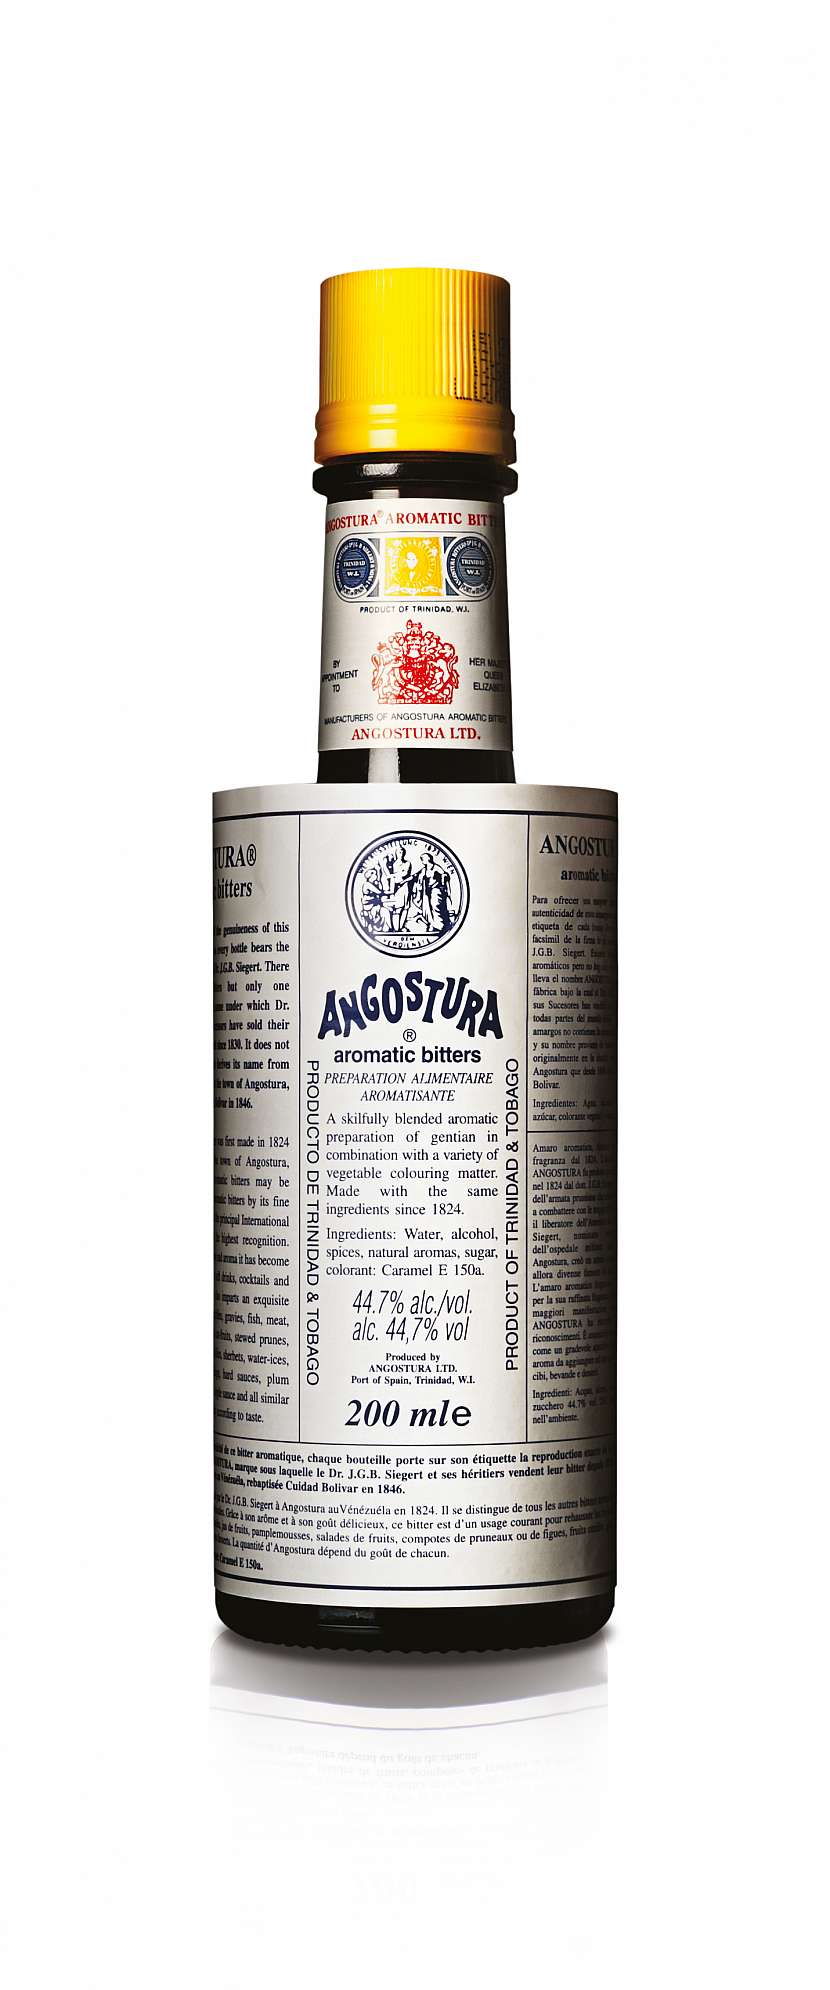 1877_Angostura_Aromatic_bitters1